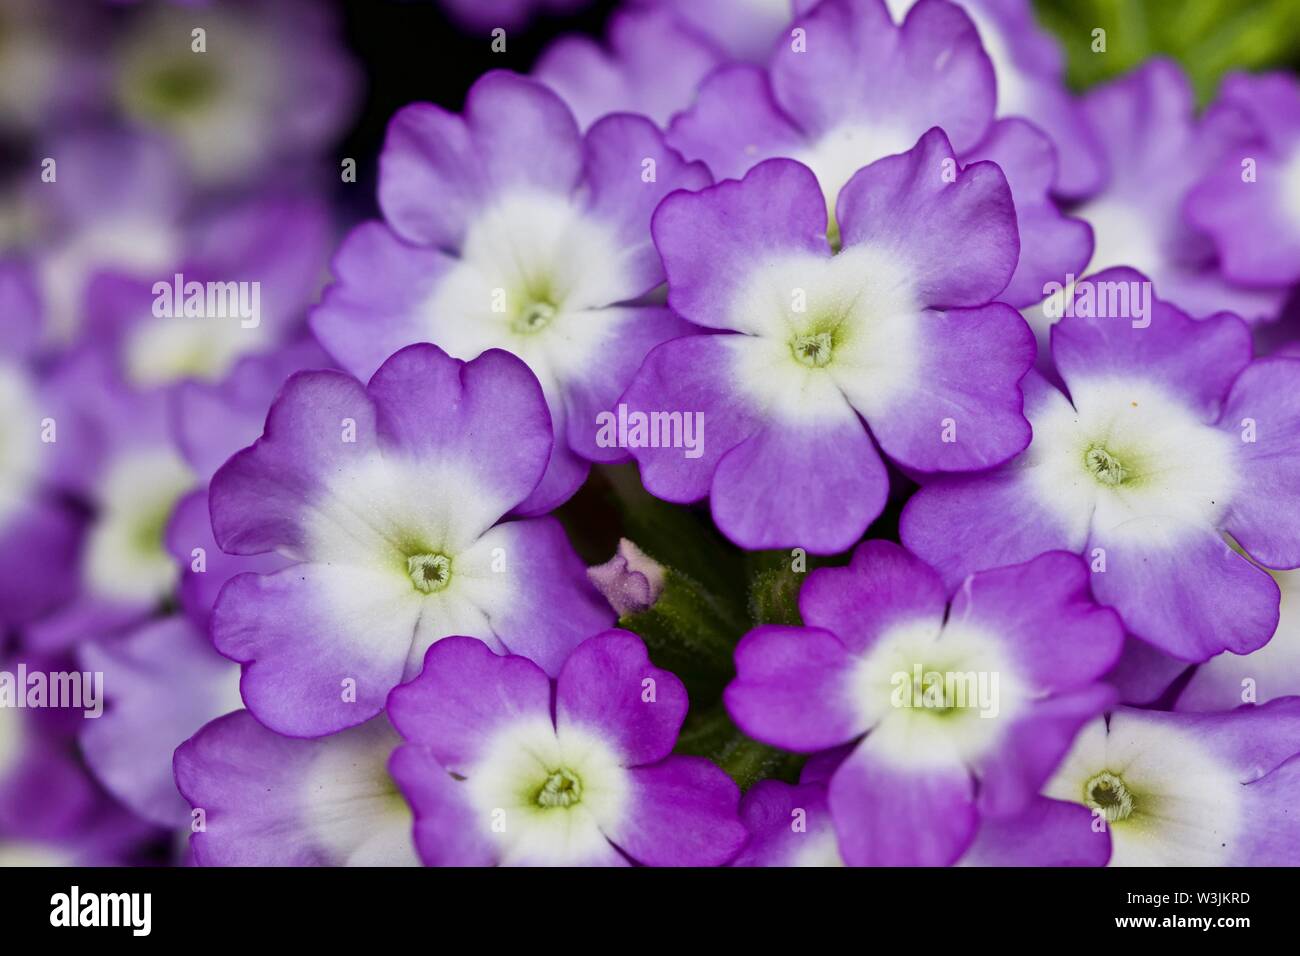 Closeup of purple and white Verbena Stock Photo